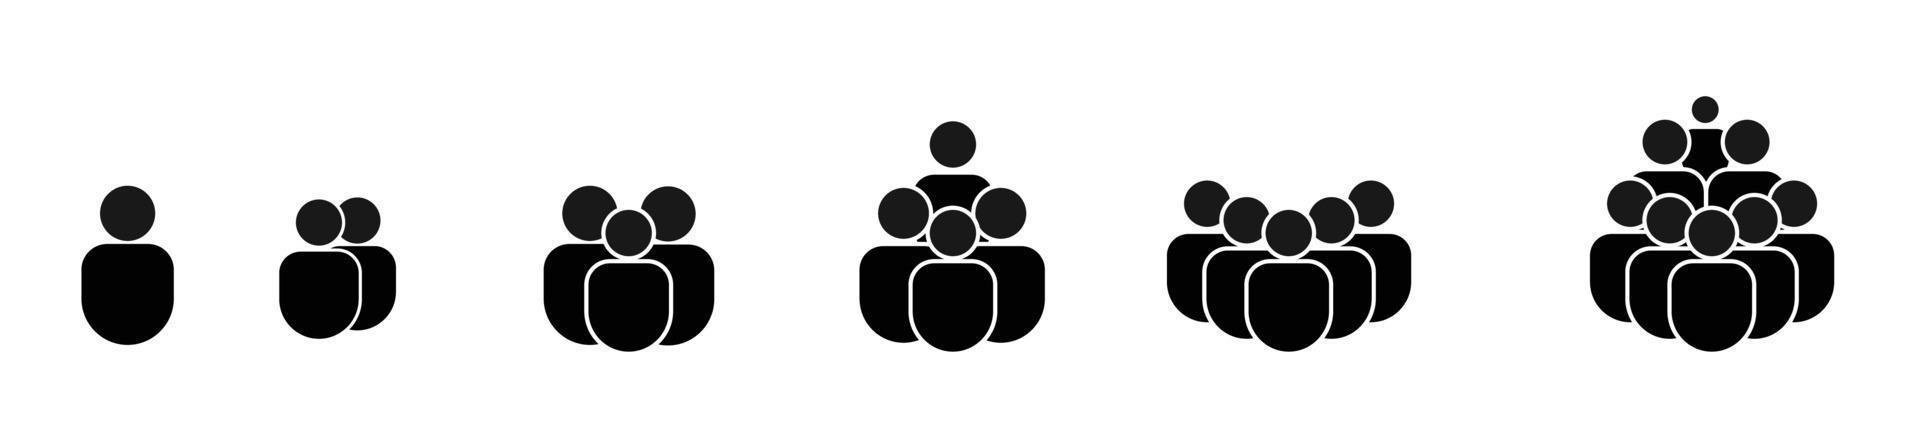 conjunto de iconos de personas, persona del equipo, multitud, población aislada en fondo blanco, ilustración vectorial vector